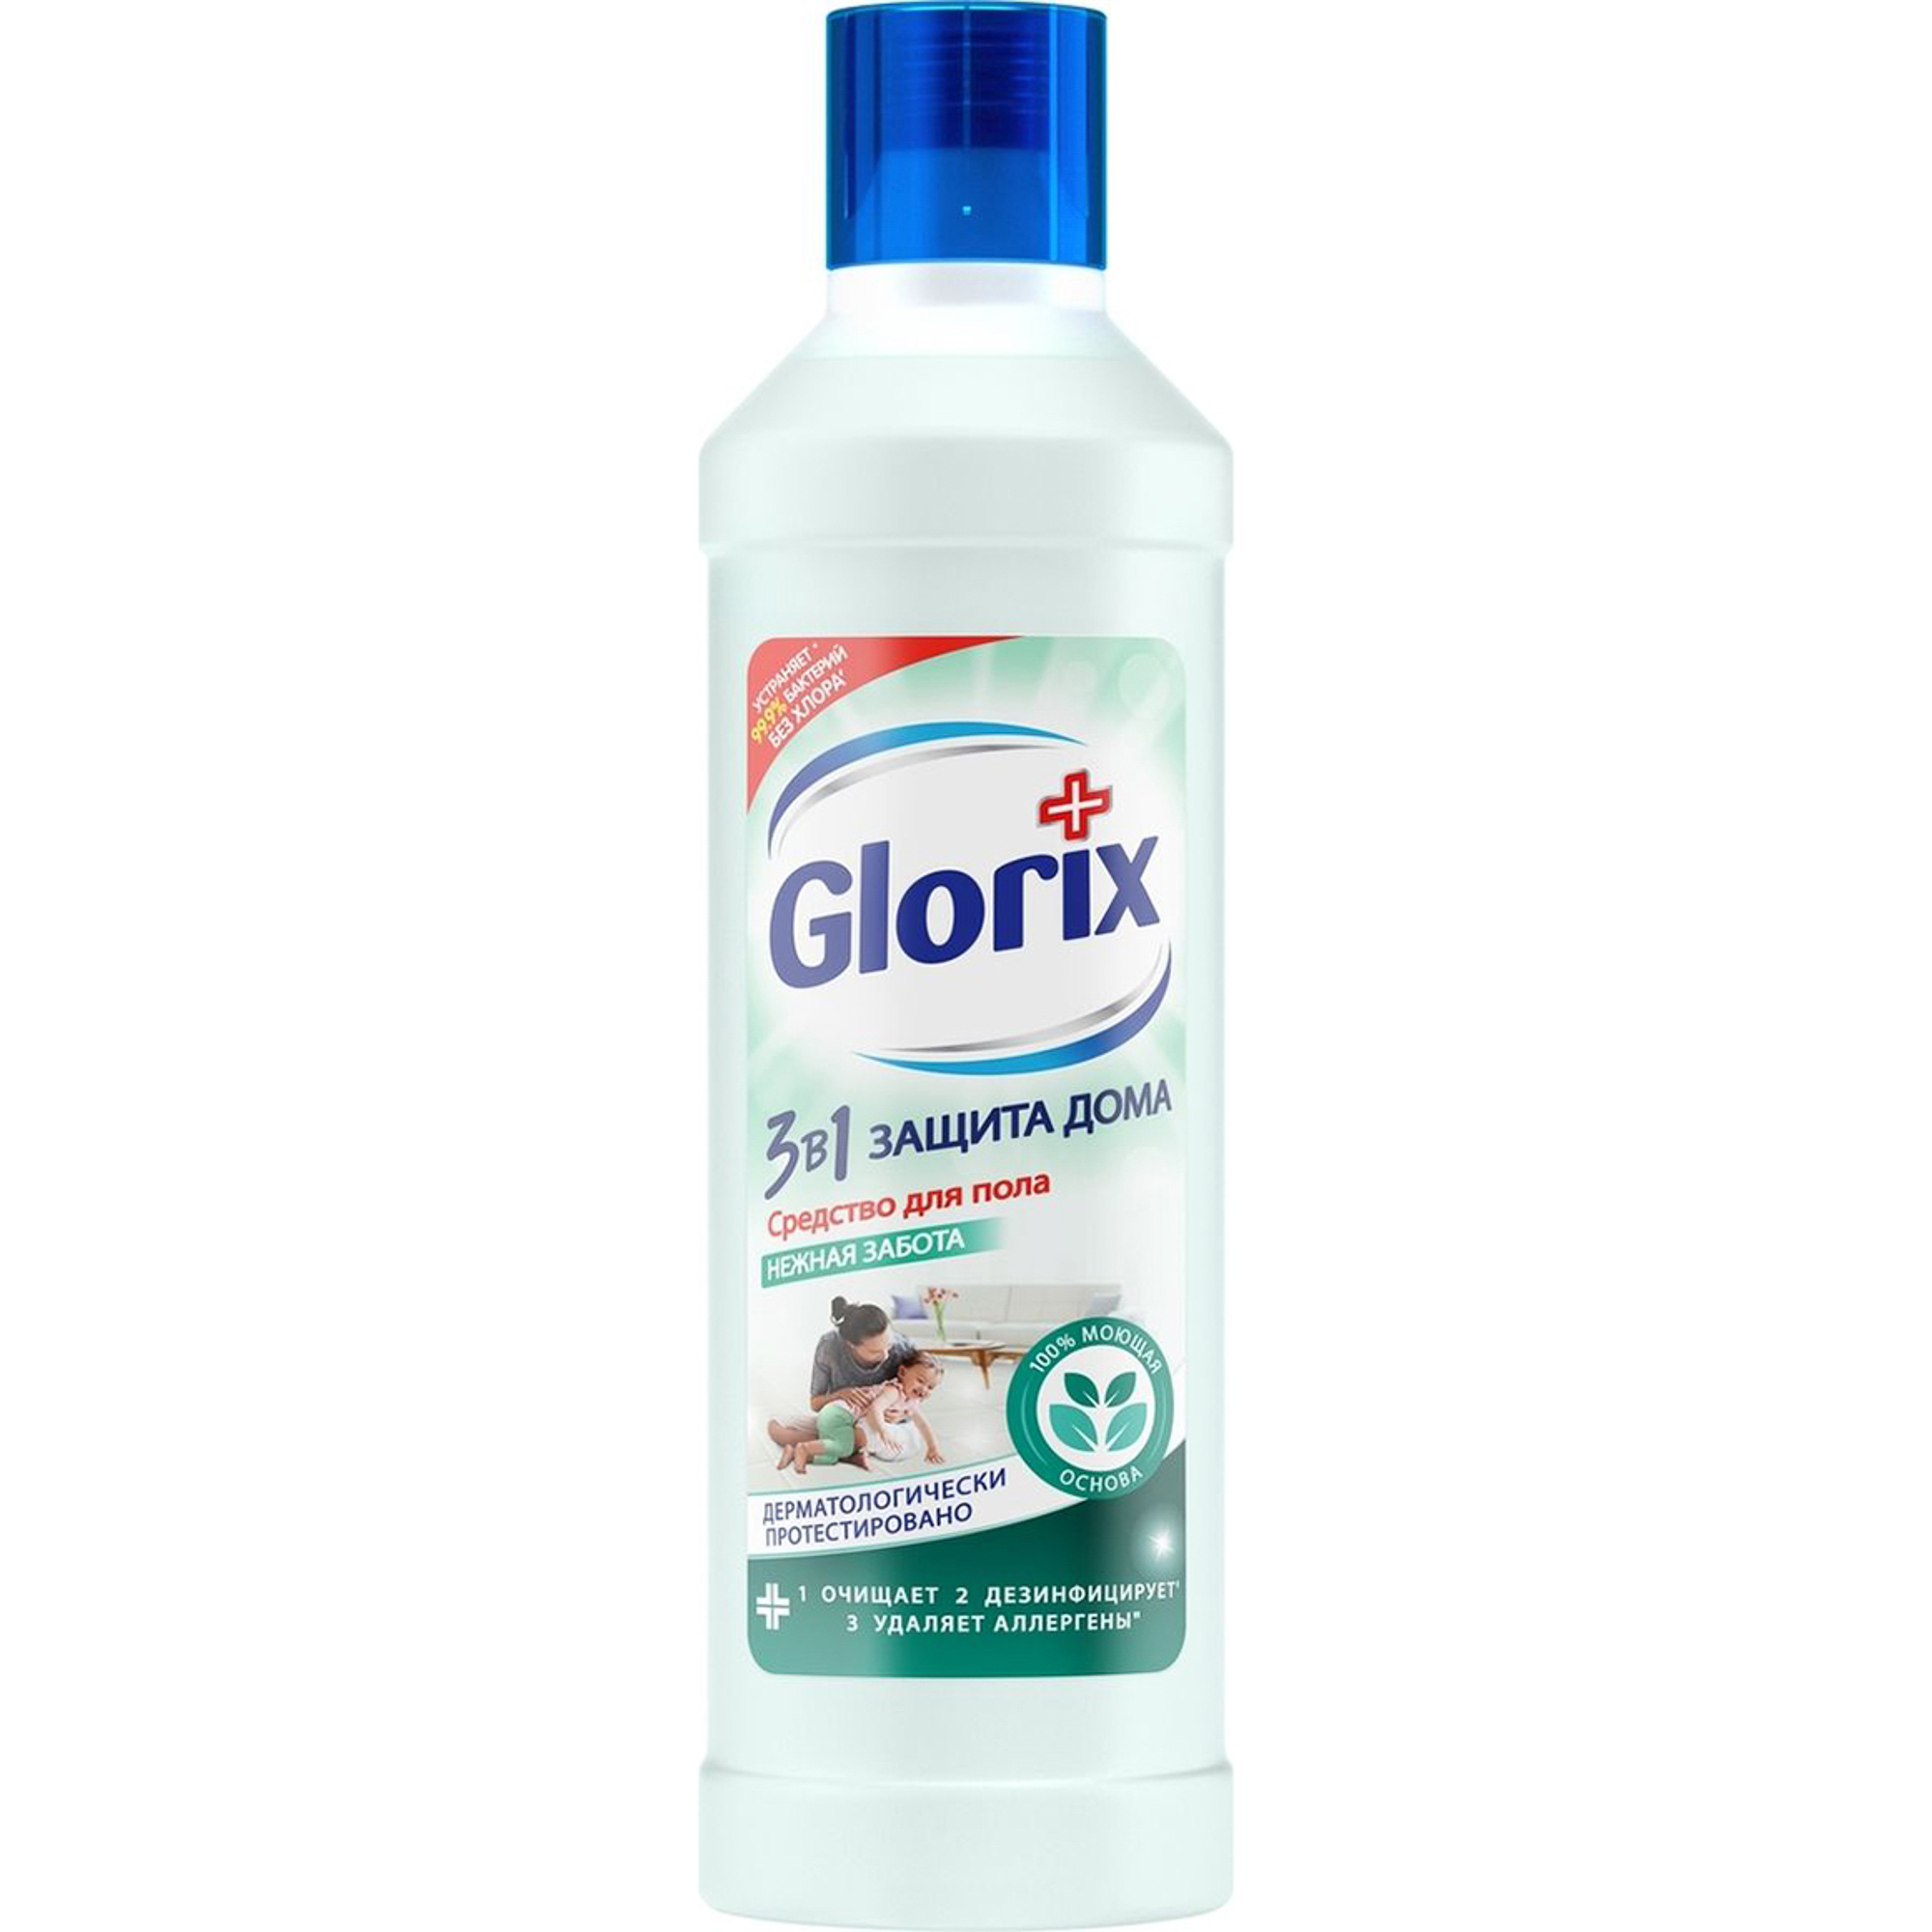 фото Средство для мытья пола glorix нежная забота 1 л